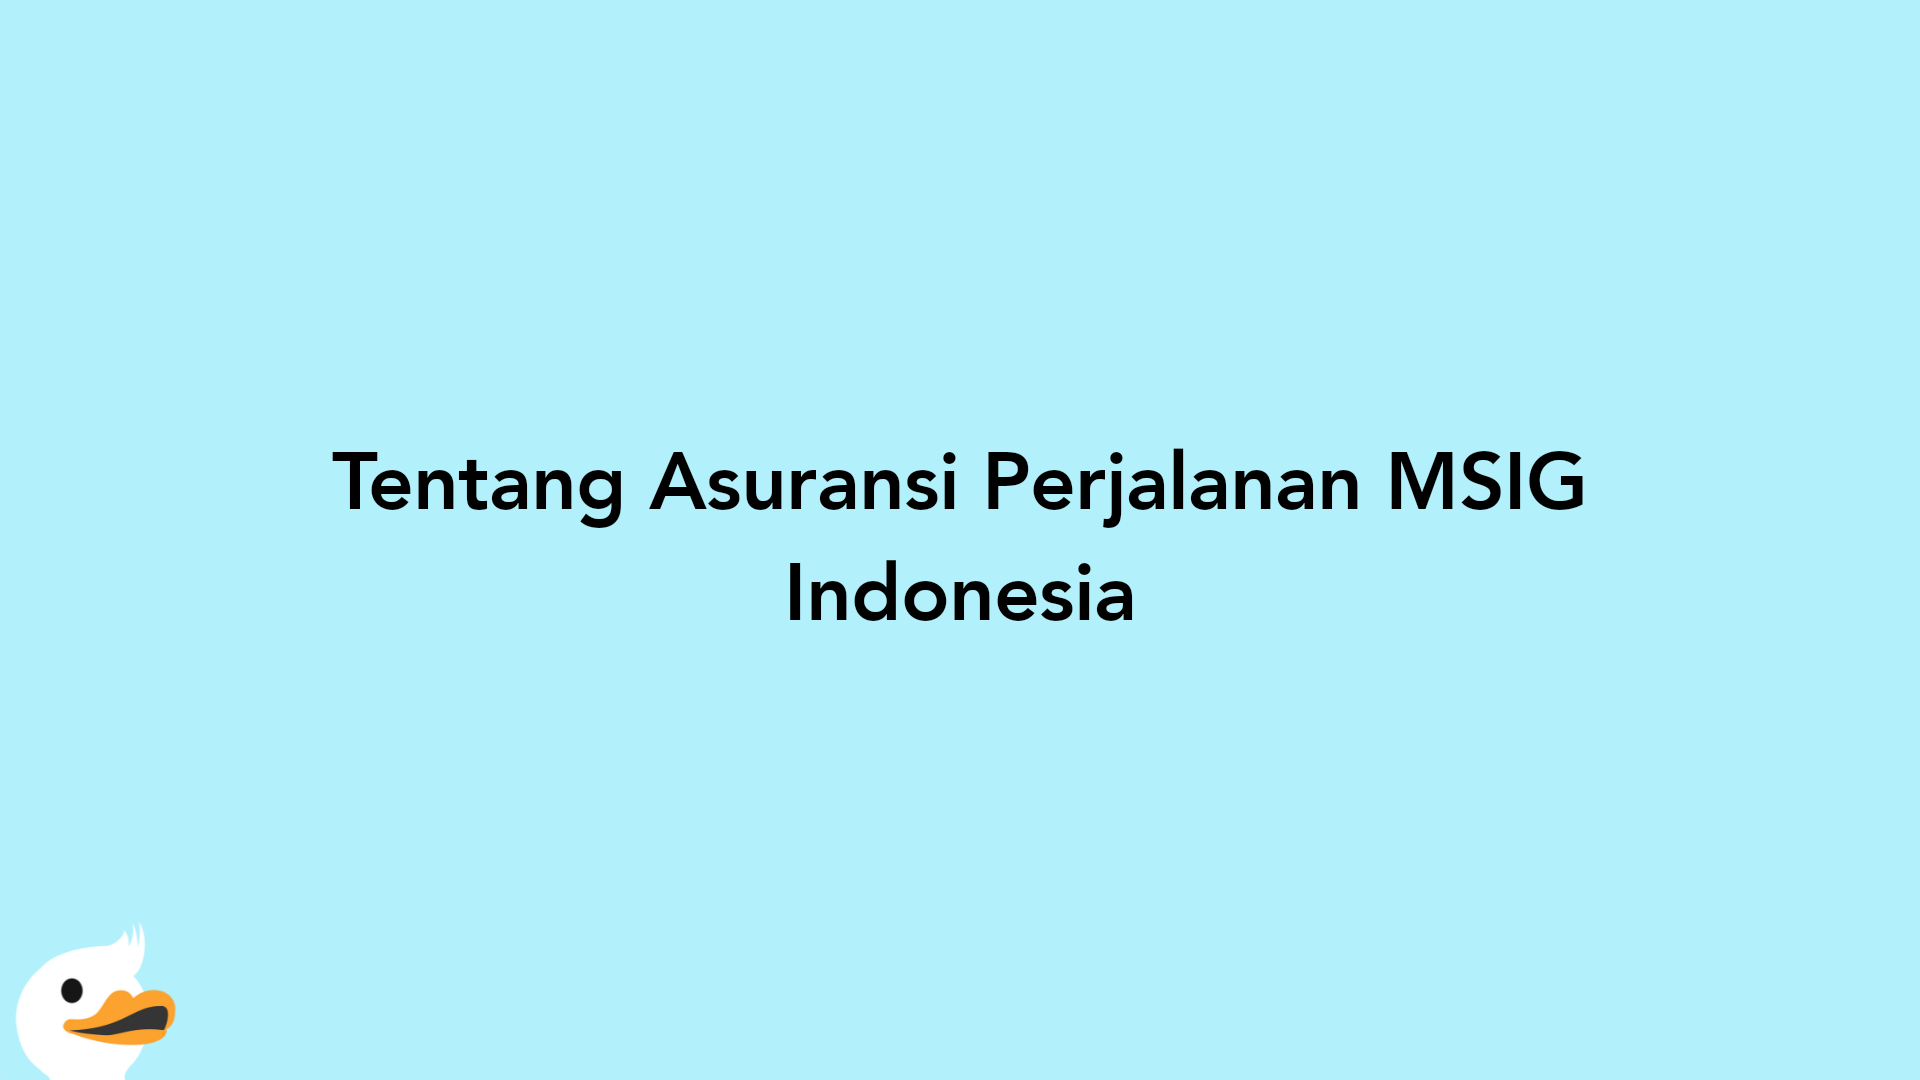 Tentang Asuransi Perjalanan MSIG Indonesia